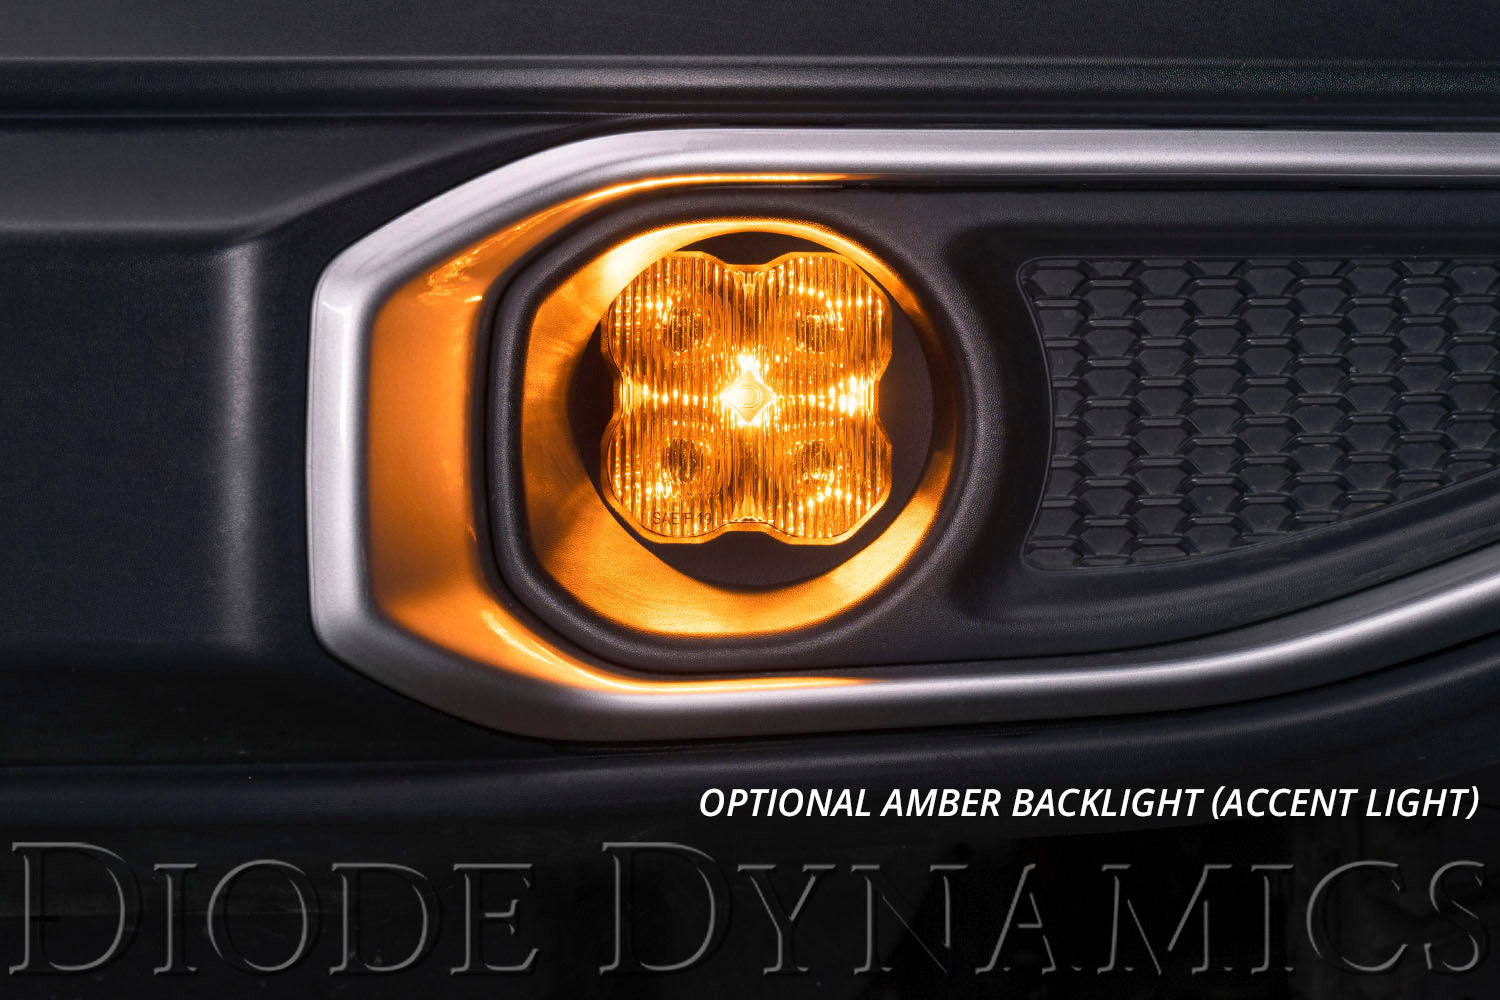 SS3 LED Fog Light Kit for 2014-2021 Toyota Highlander White SAE Fog Max w/ Backlight Diode Dynamics